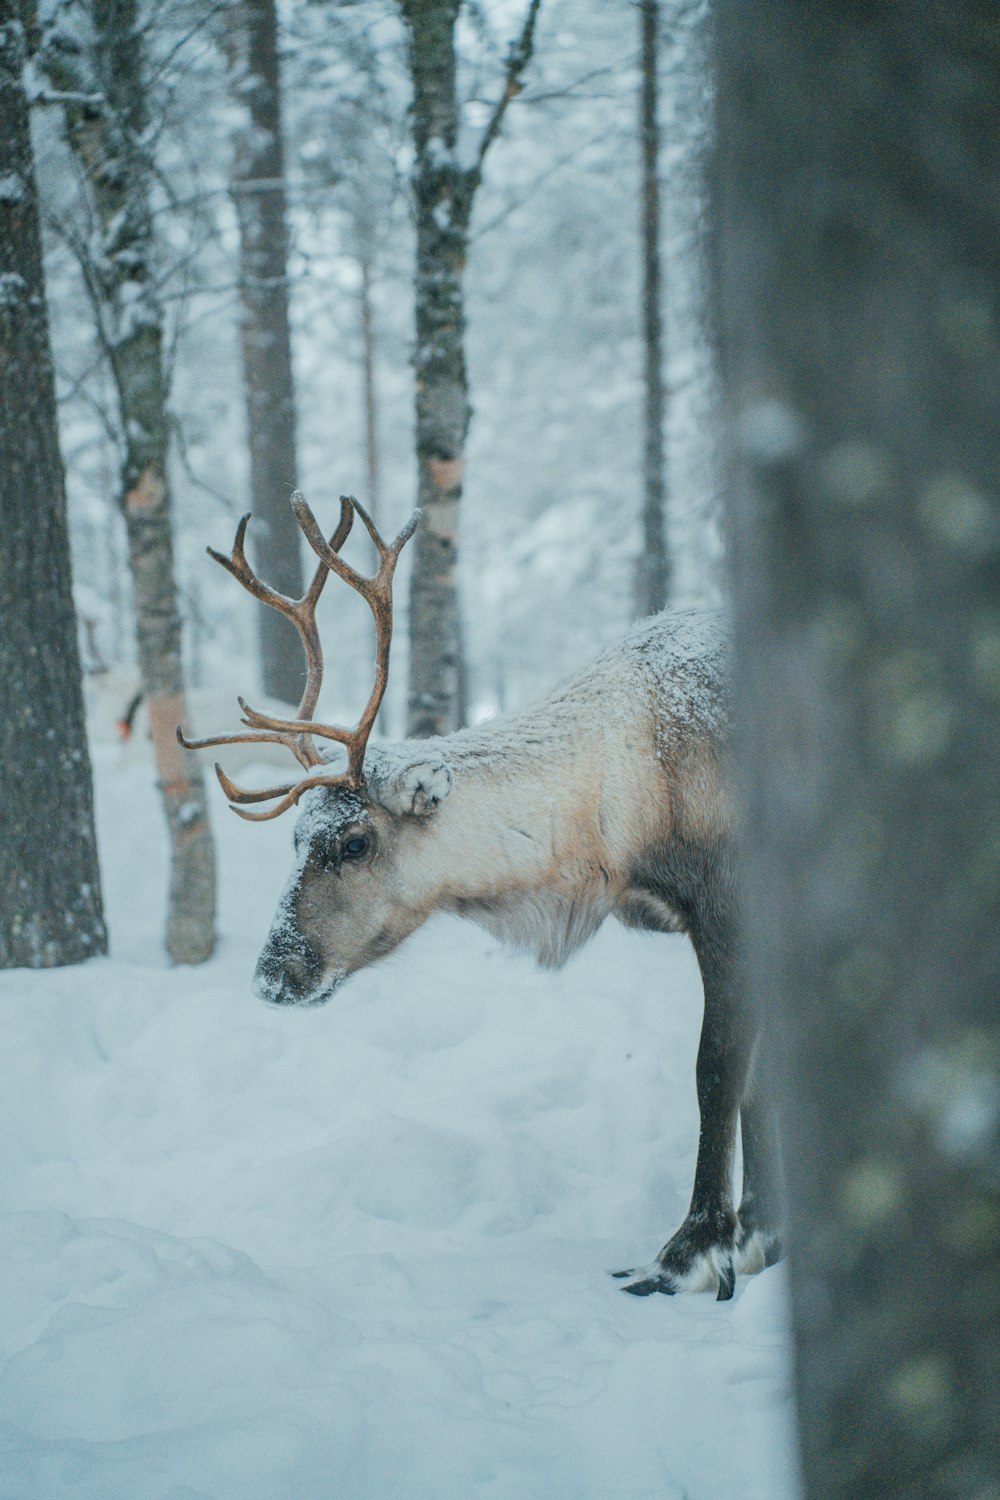 Una renna è in piedi nella neve vicino ad alcuni alberi